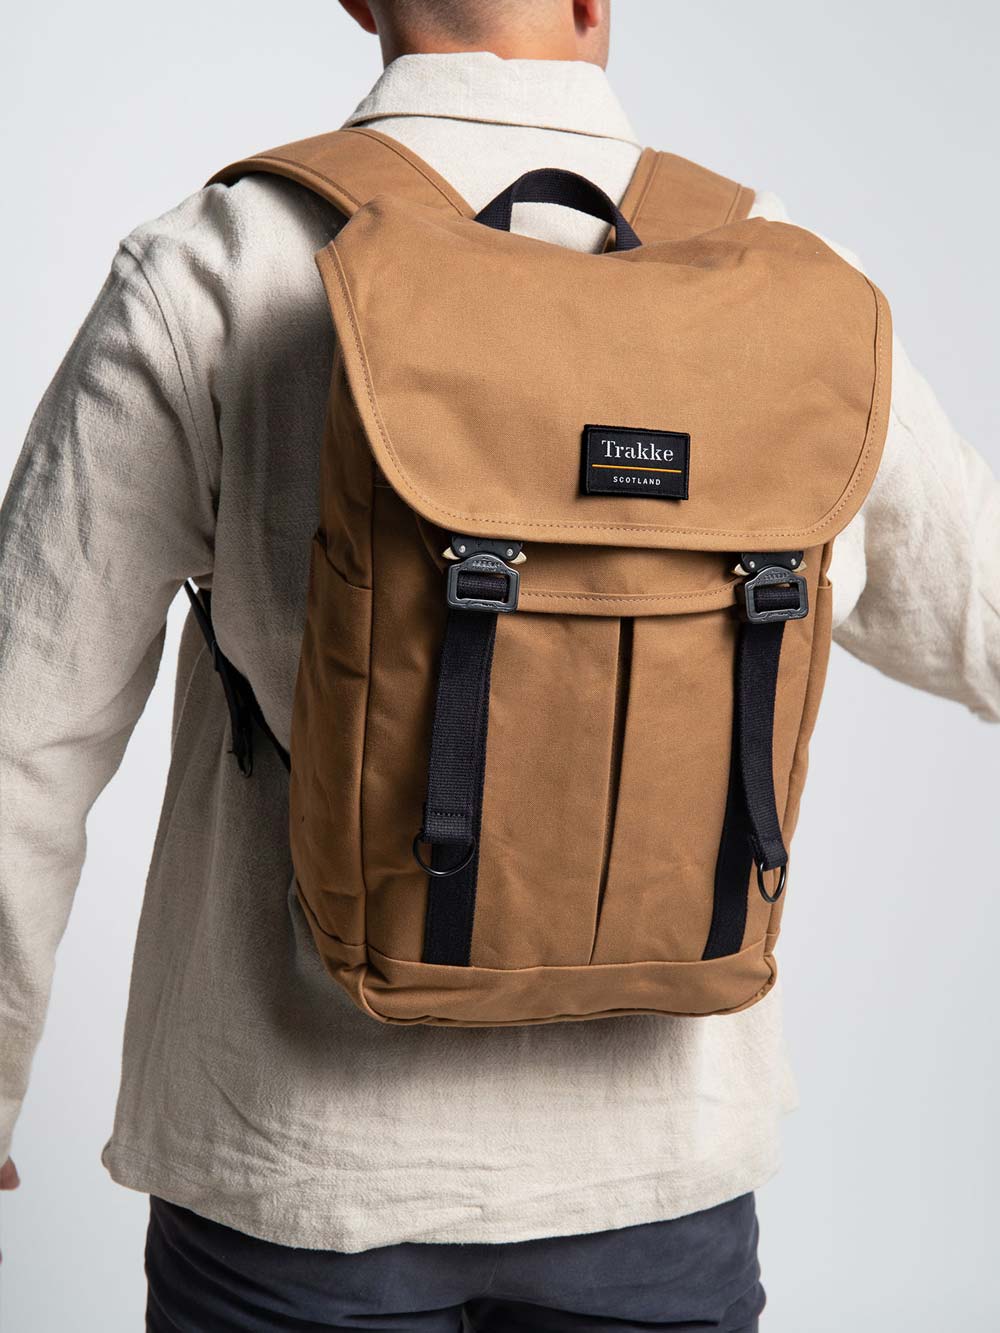 Bannoch Backpack - Best Work Backpack